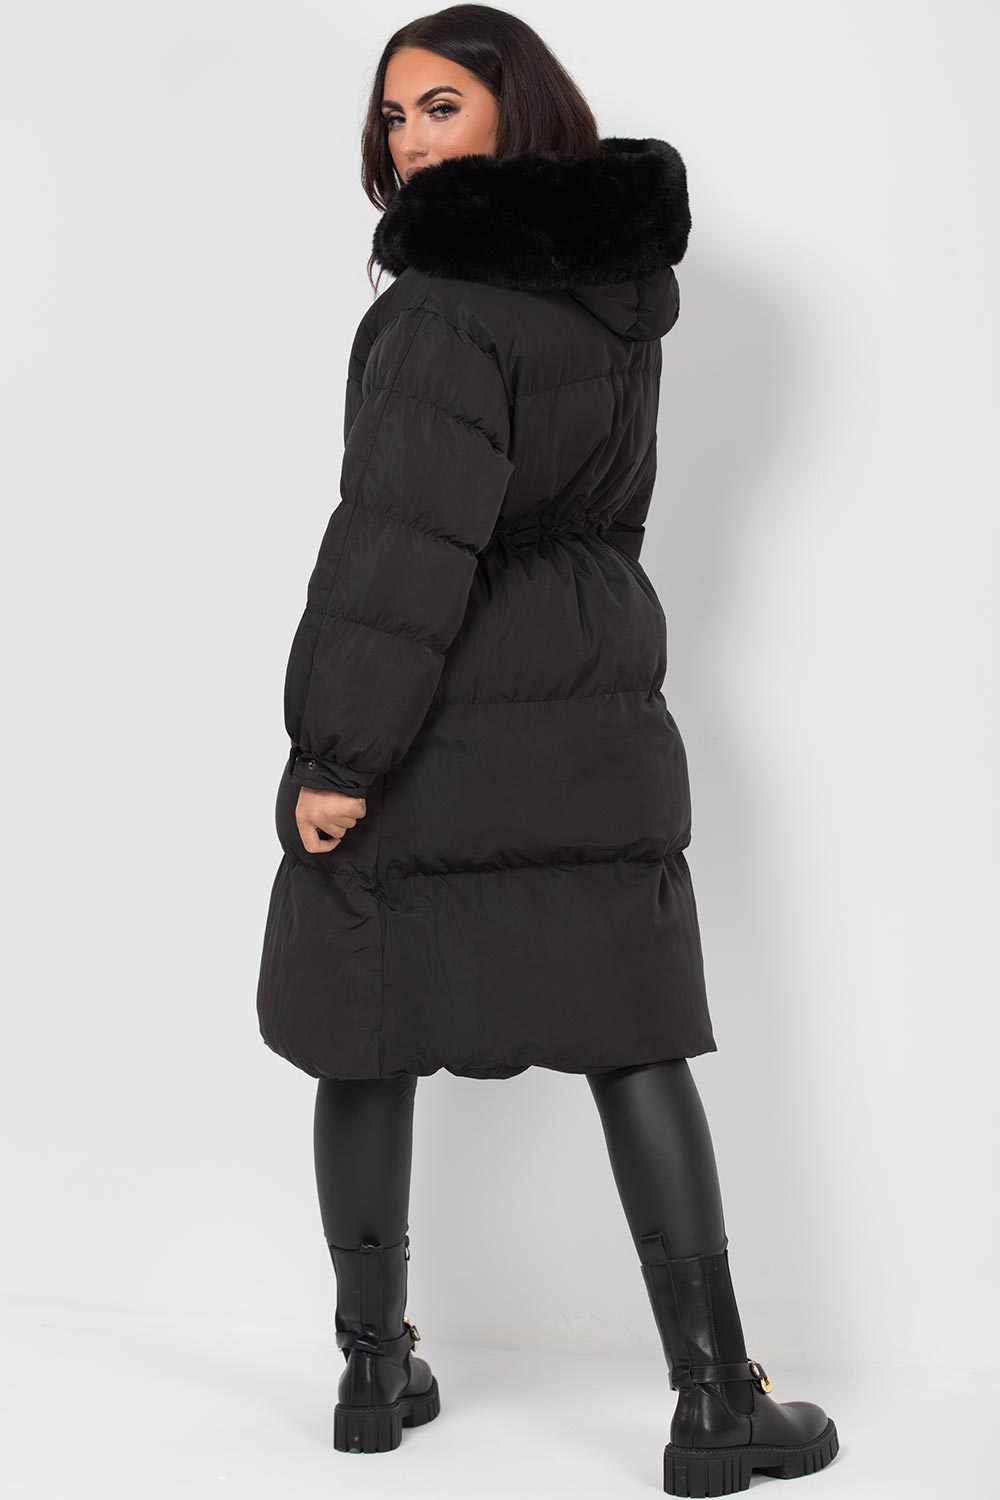 womens long puffer coat black